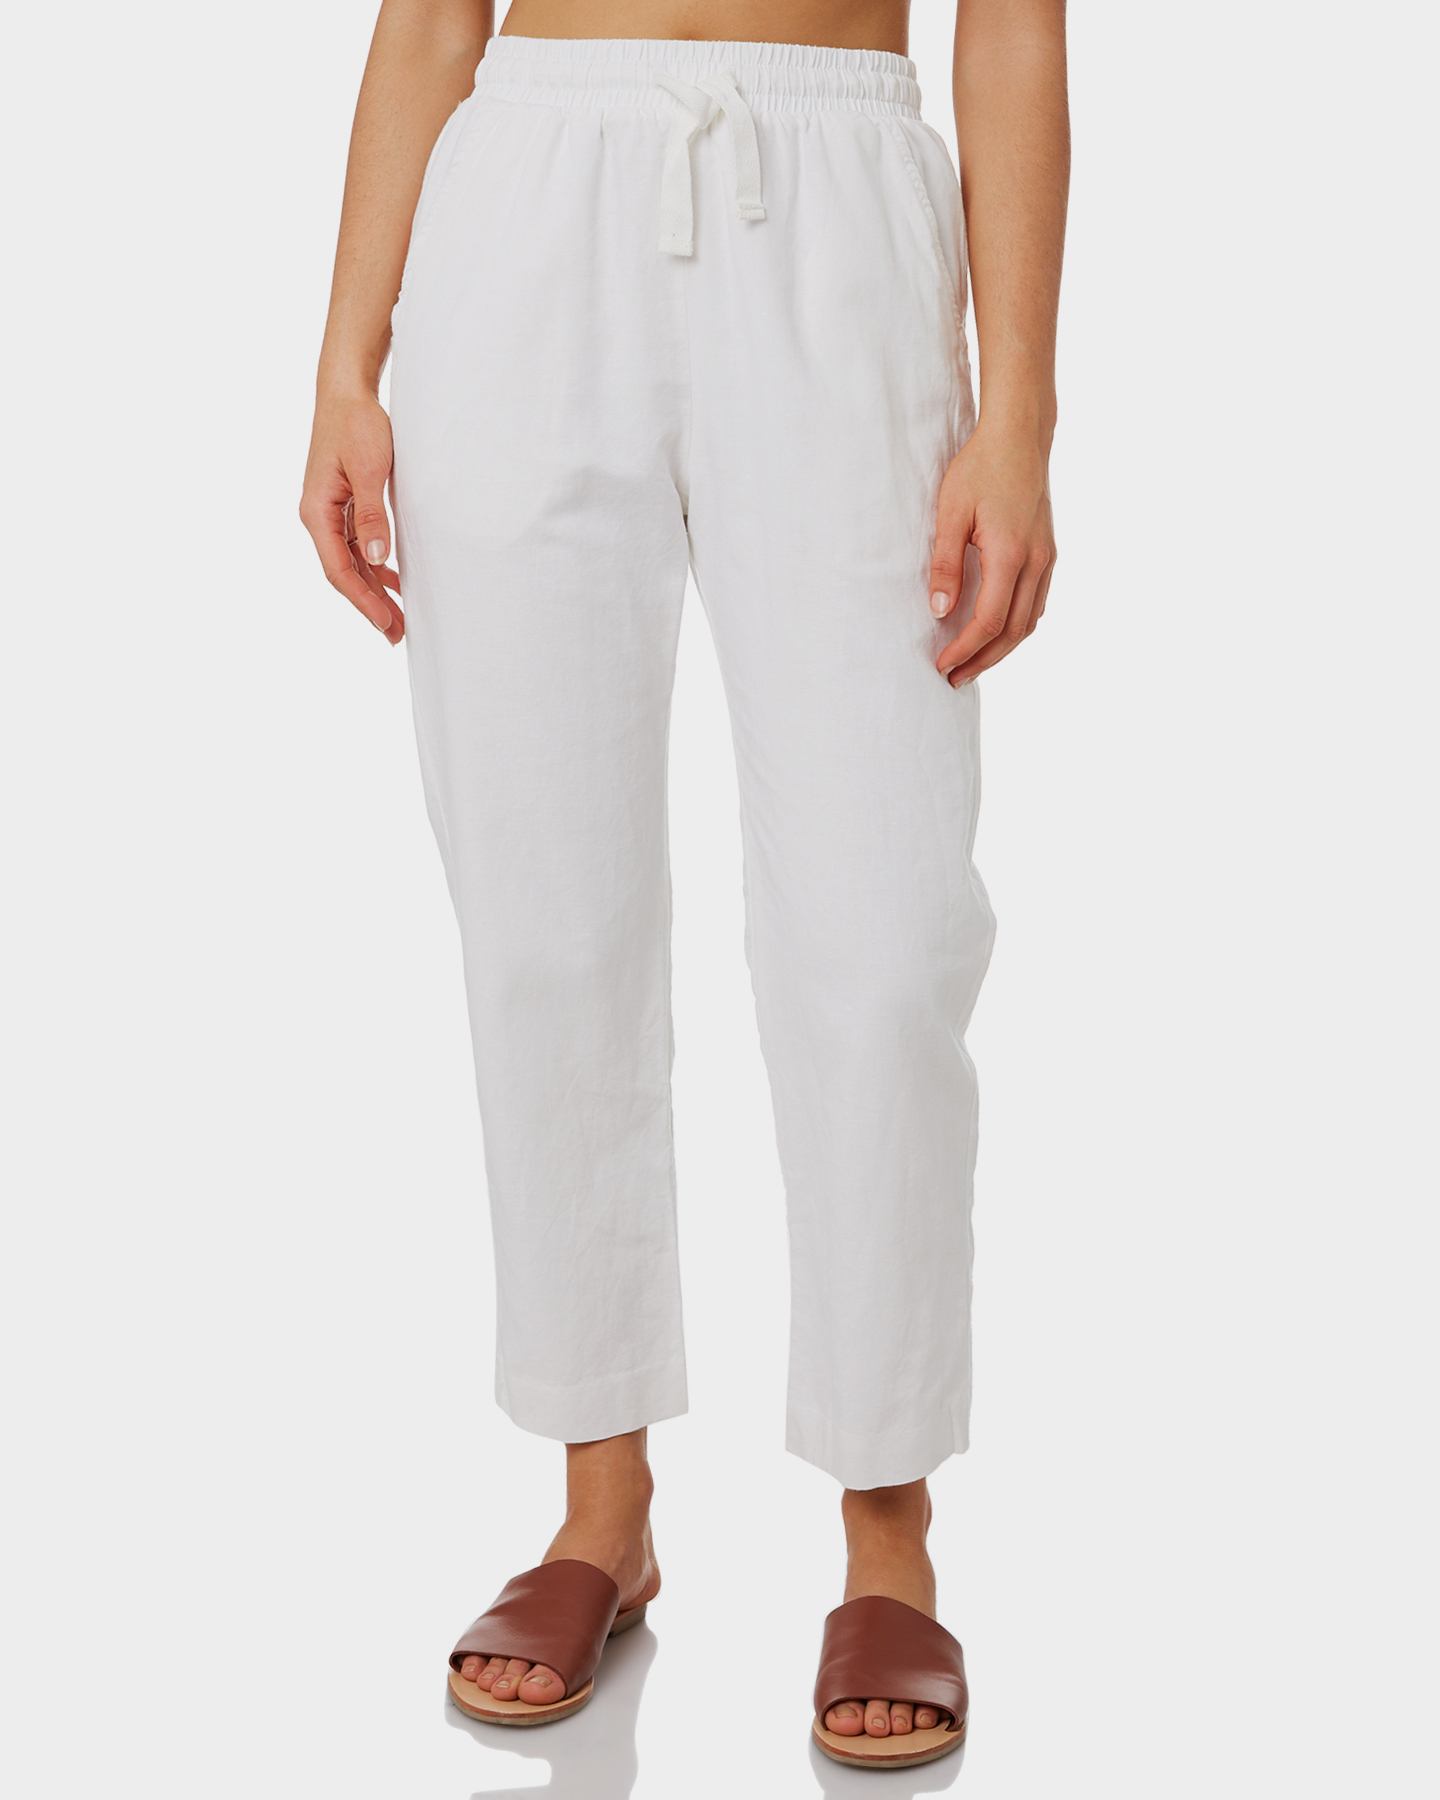 white linen womens pant suit